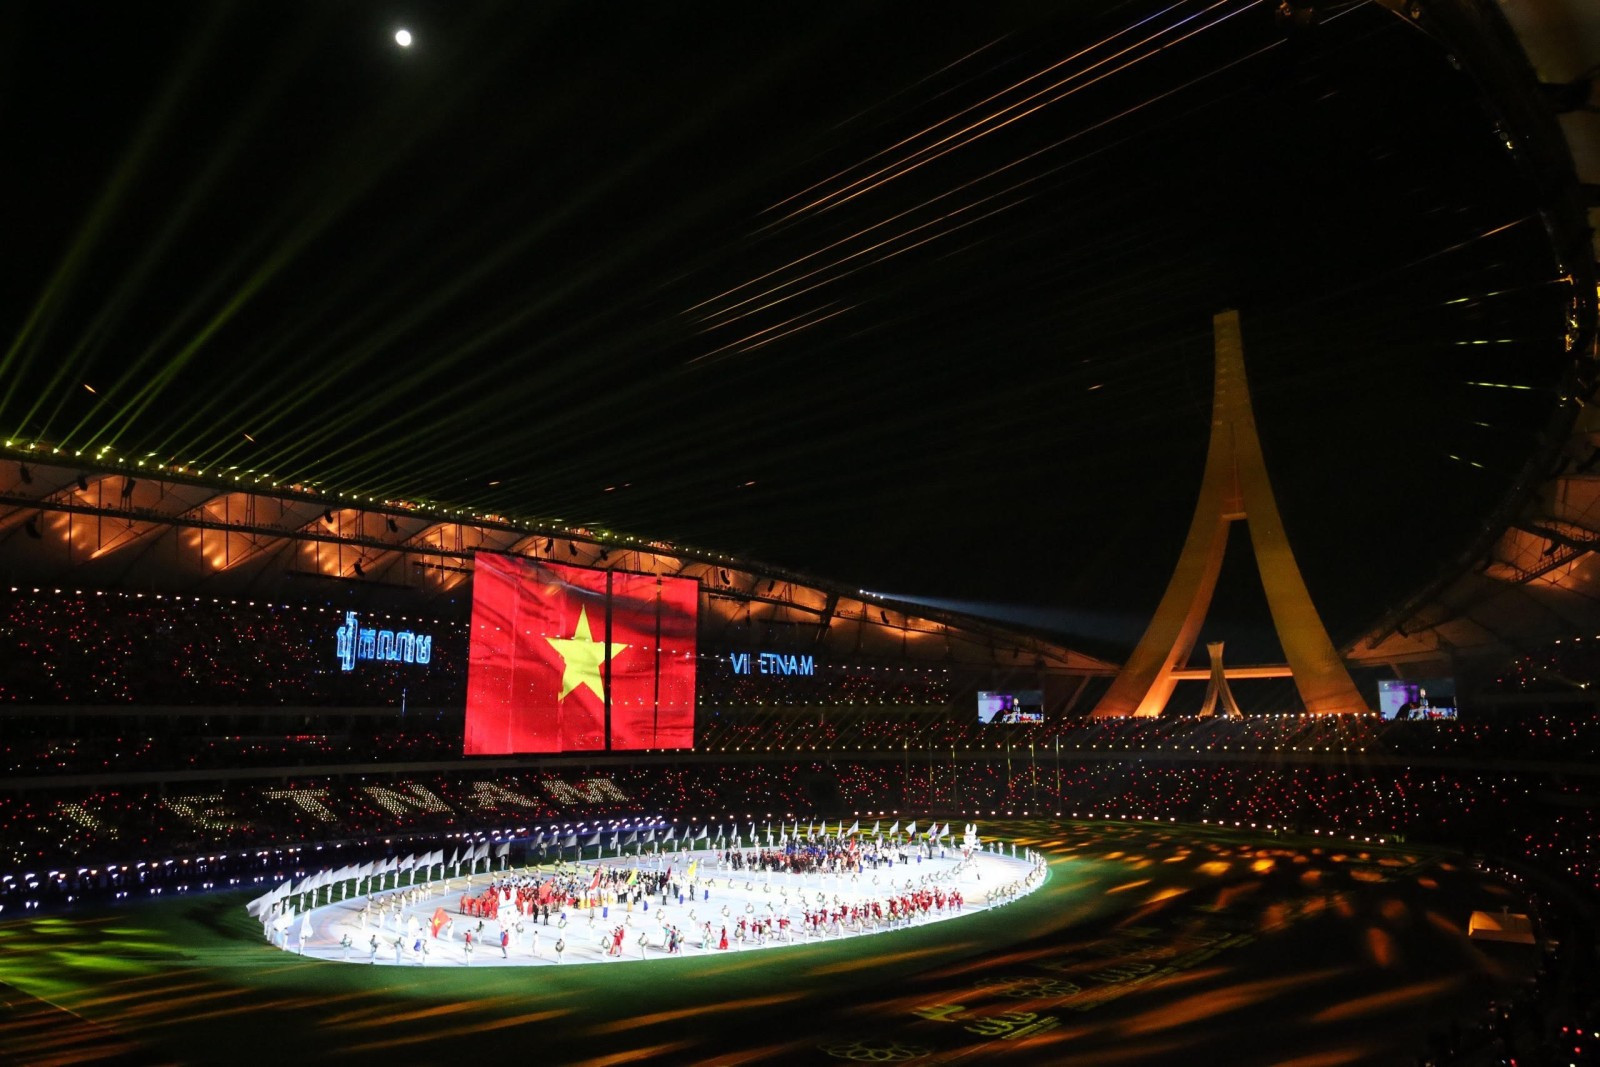 Quốc kỳ Việt Nam xuất hiện khi Đoàn thể thao Việt Nam xuất hiện trên Sân vận động Morodok Techo